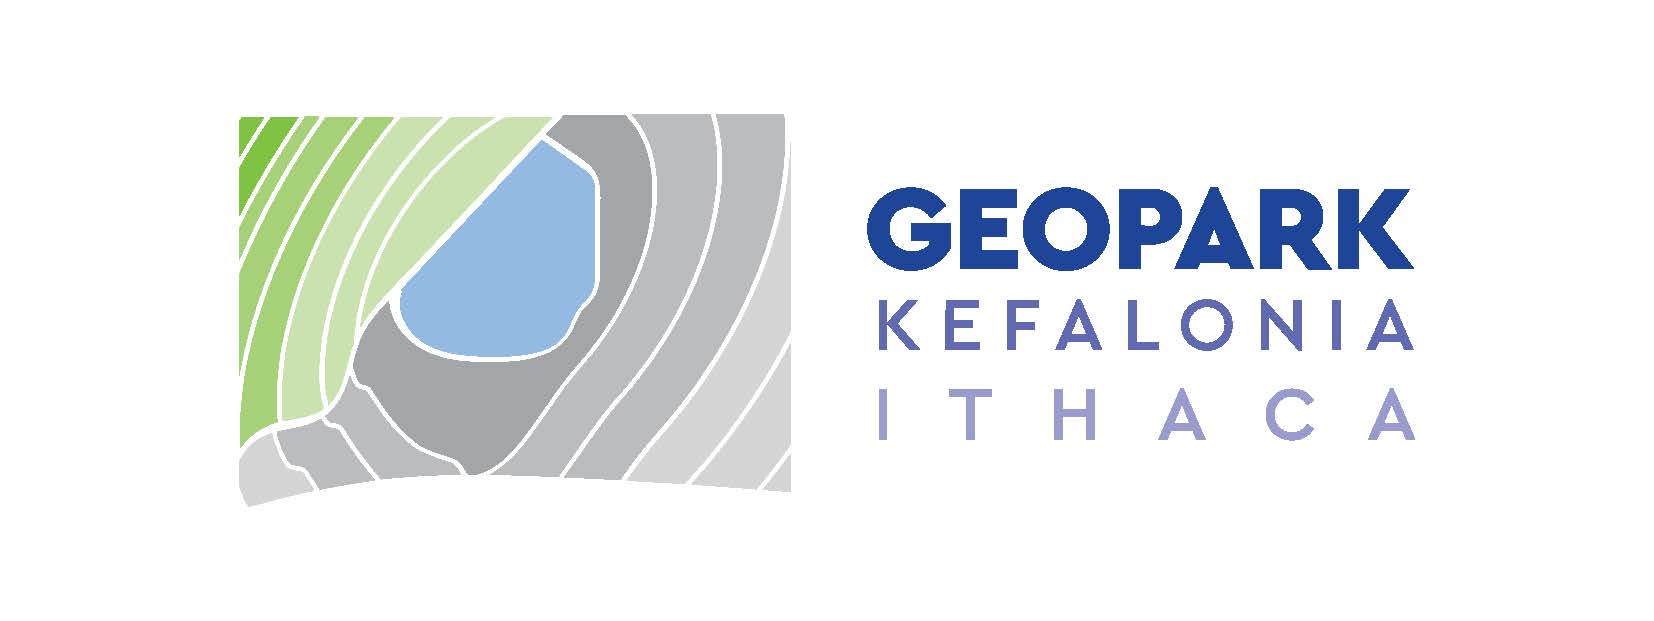 Kefalonia-Ithaca Geopark 